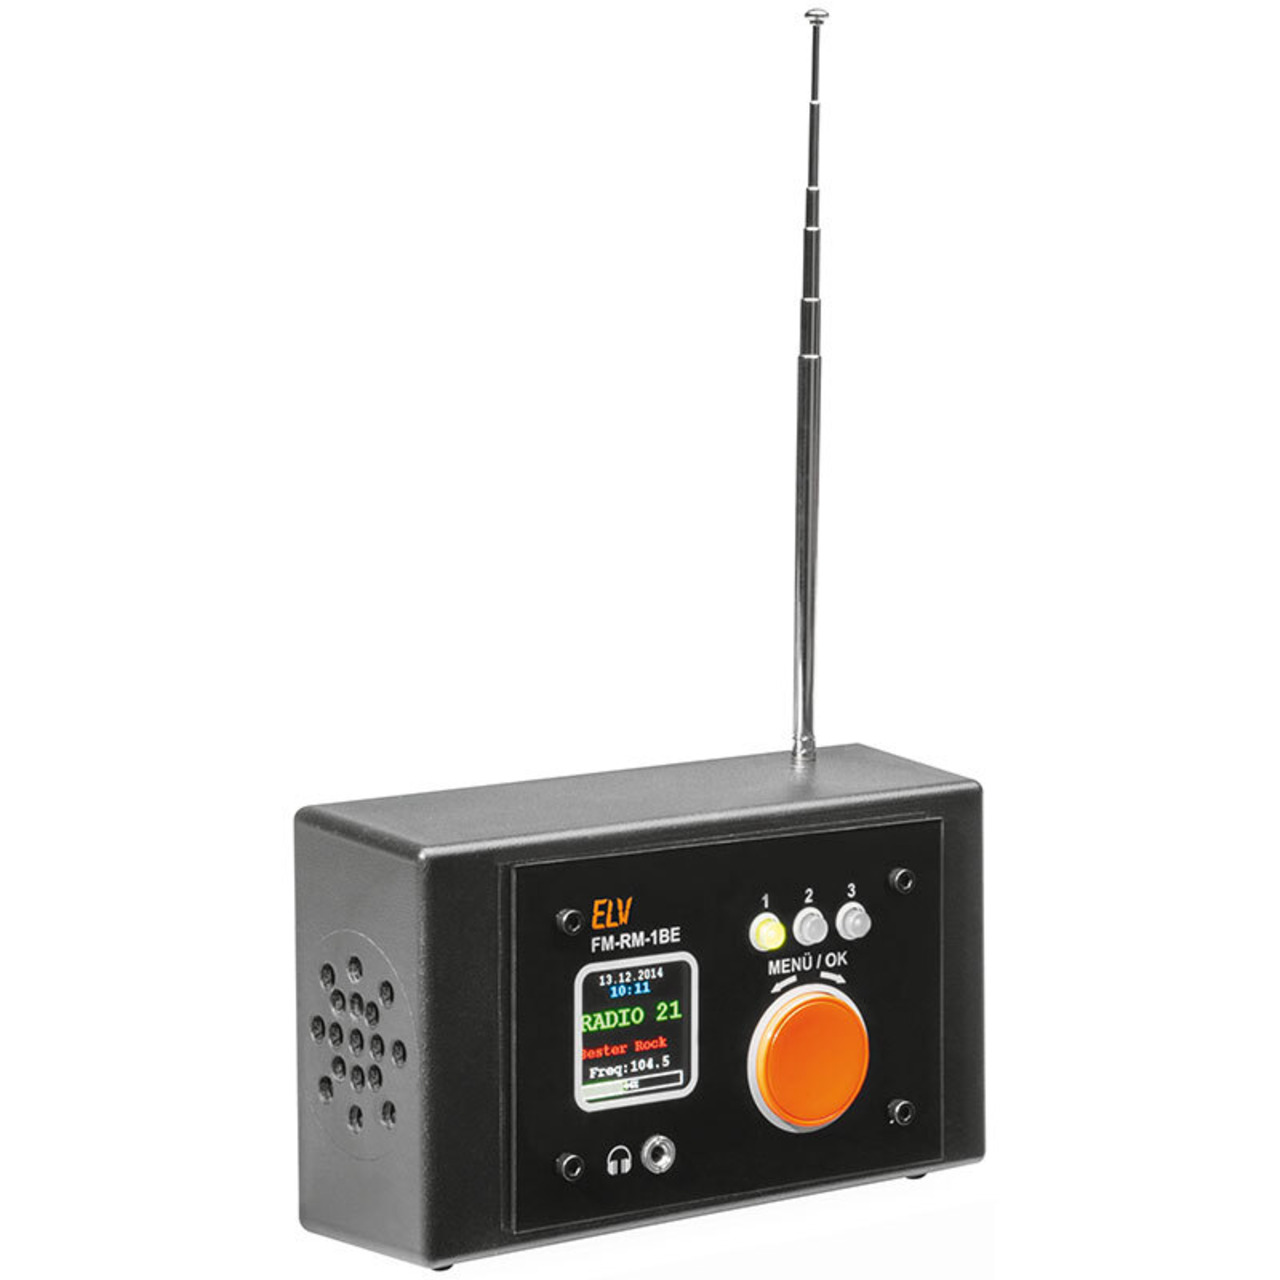 ELV Bausatz FM-Receiver Modul mit Si4705- FM-RM1 inkl- Bedien- und Anzeigeeinheit FM-RM1BE